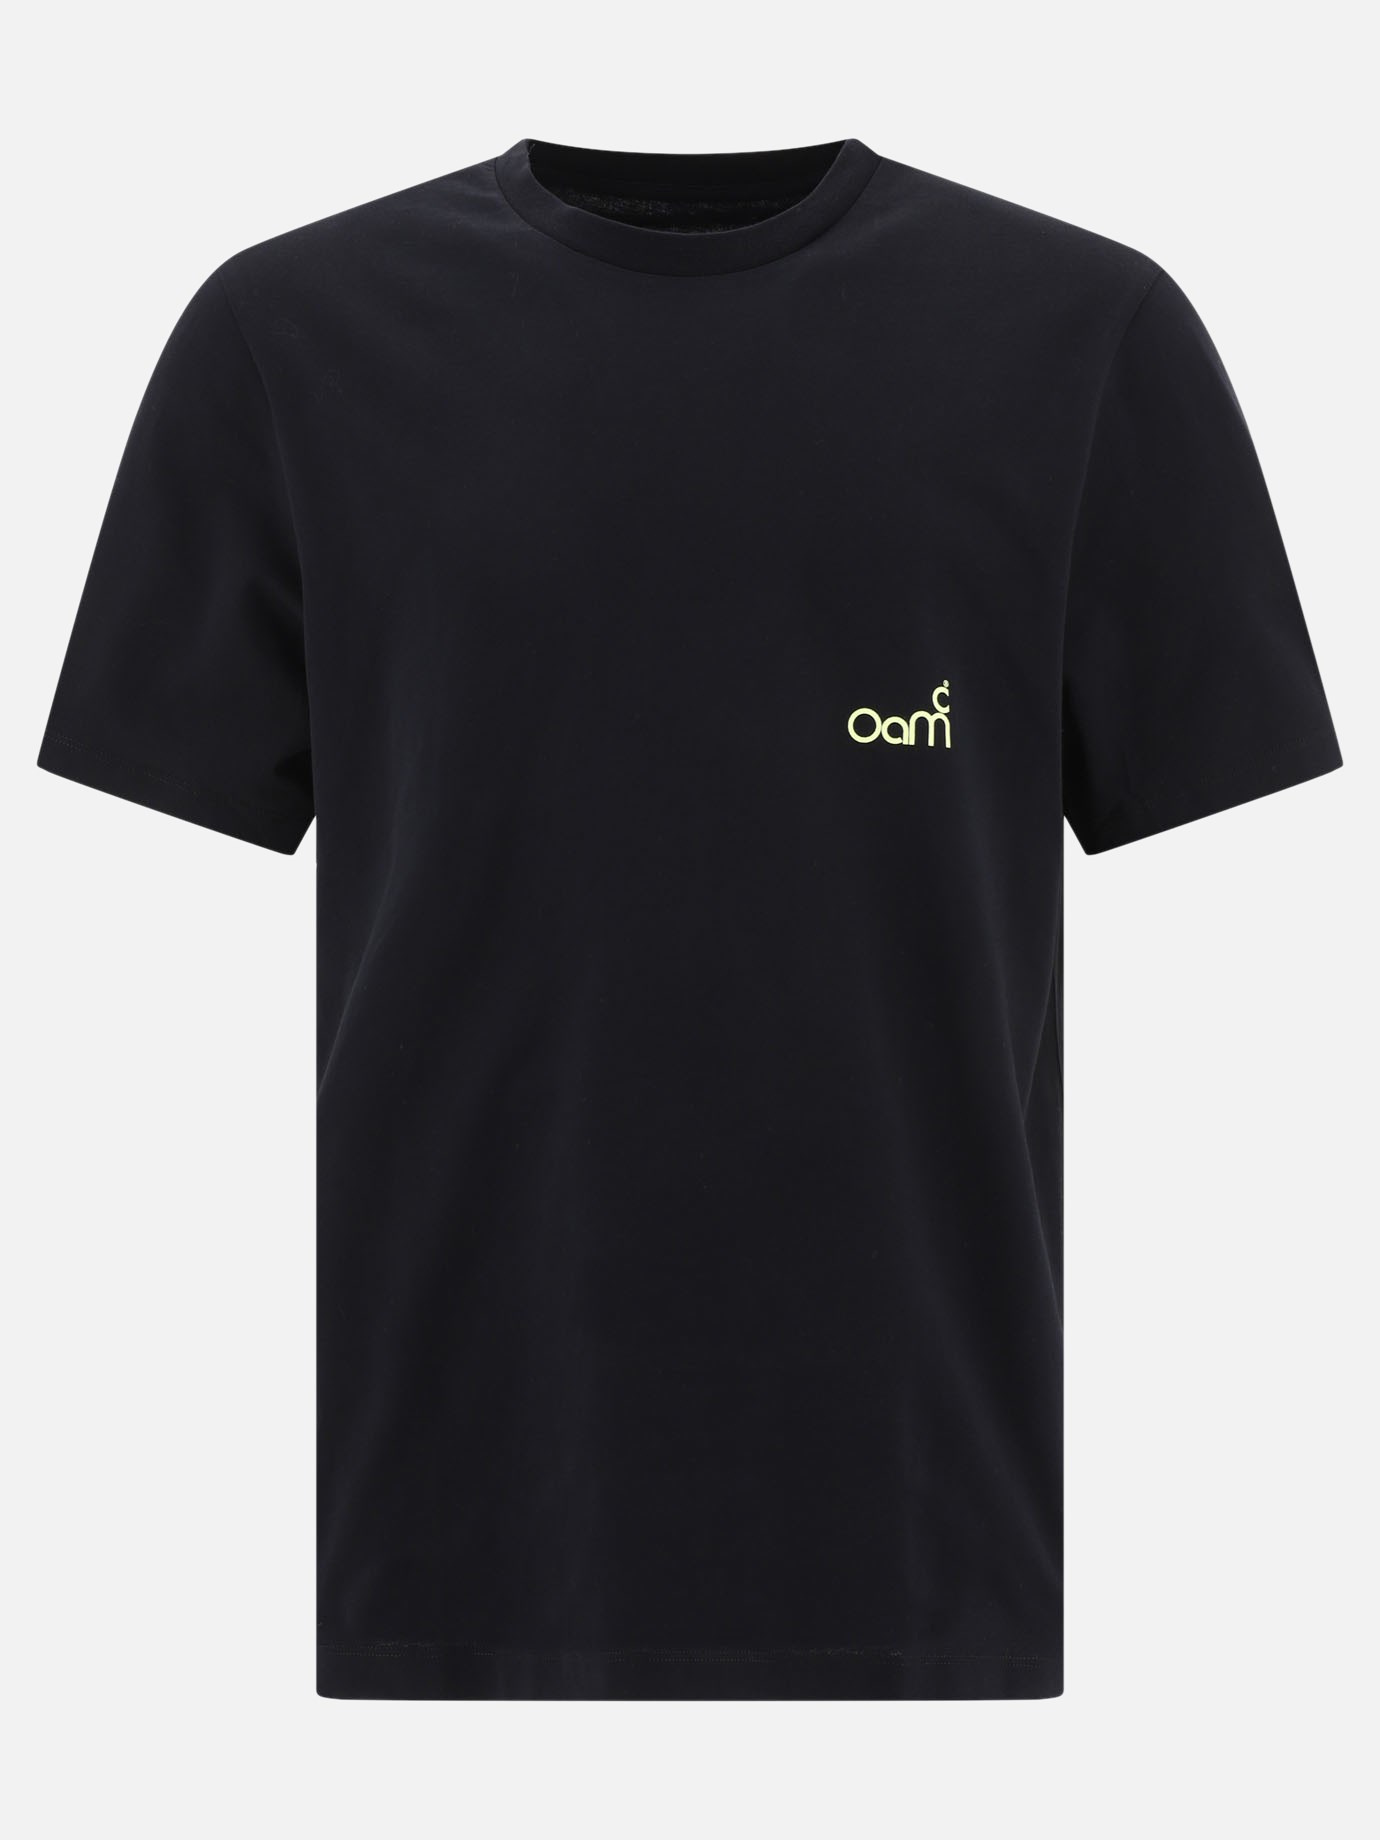  Oay  t-shirtby OAMC - 3